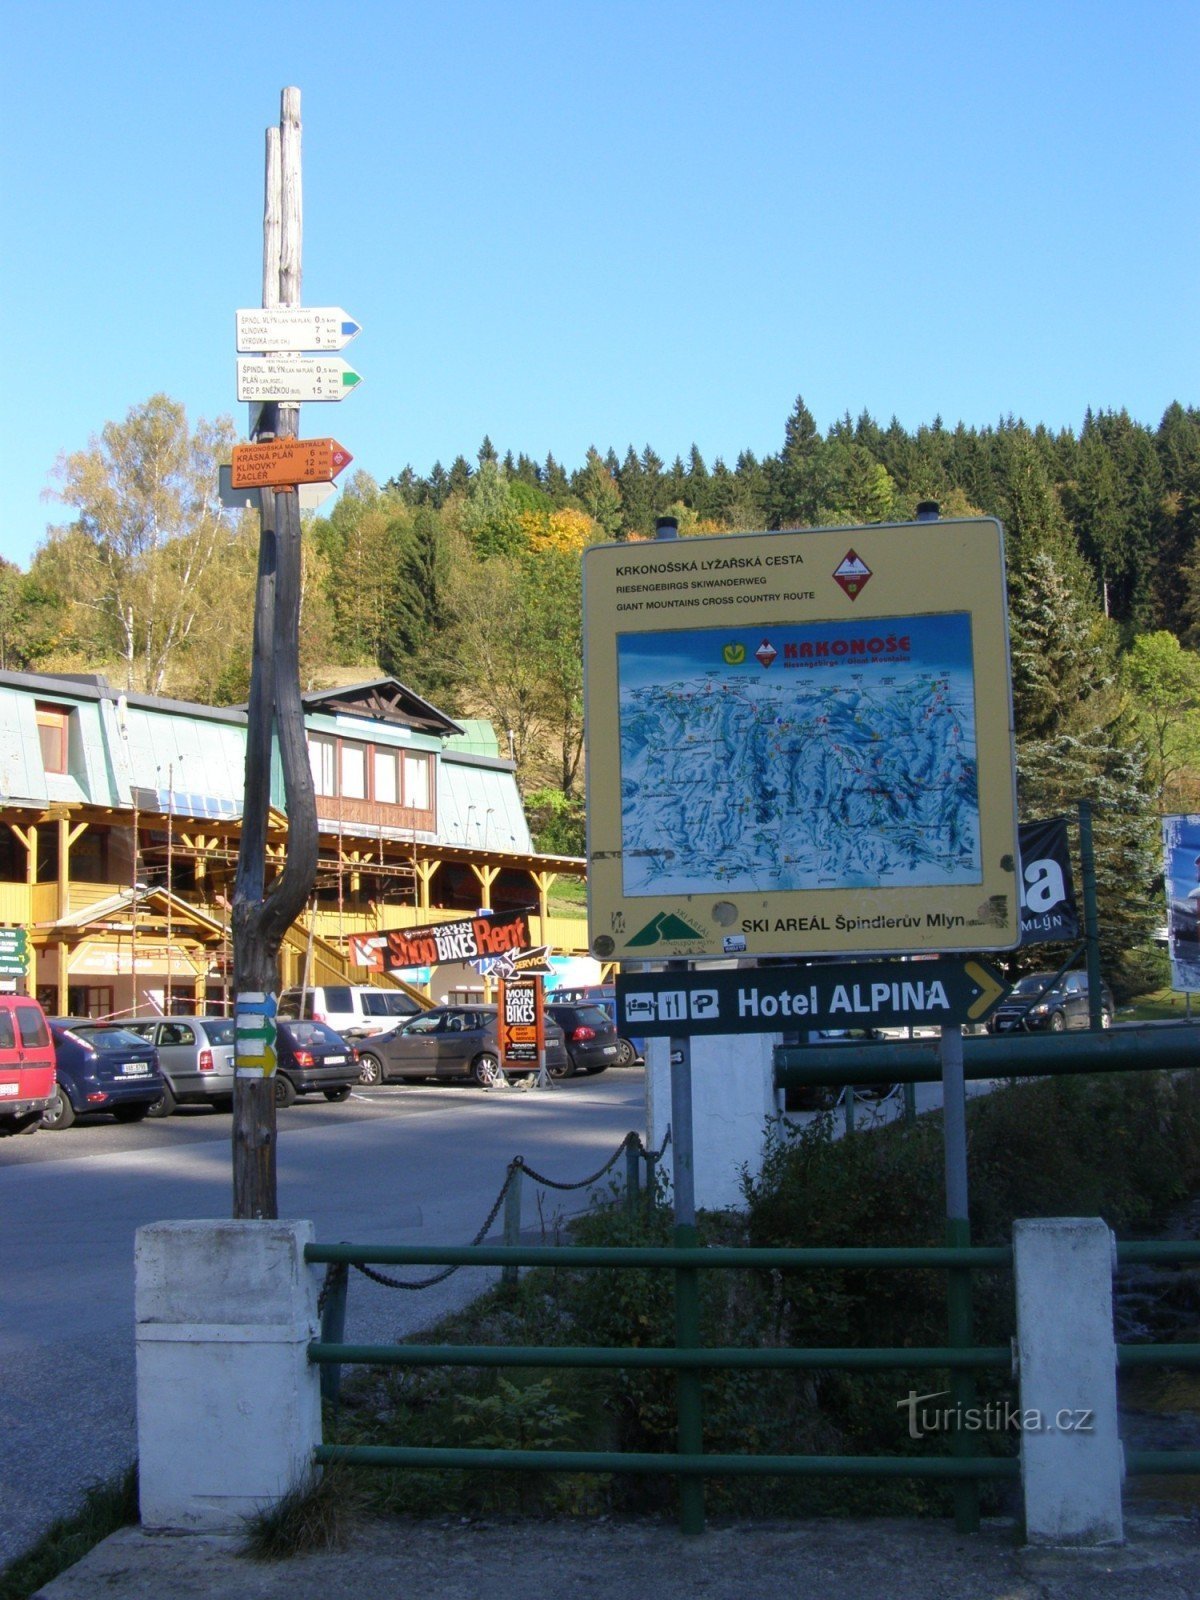 Špindlerův Mlýn 旅游十字路口 - 在信息中心